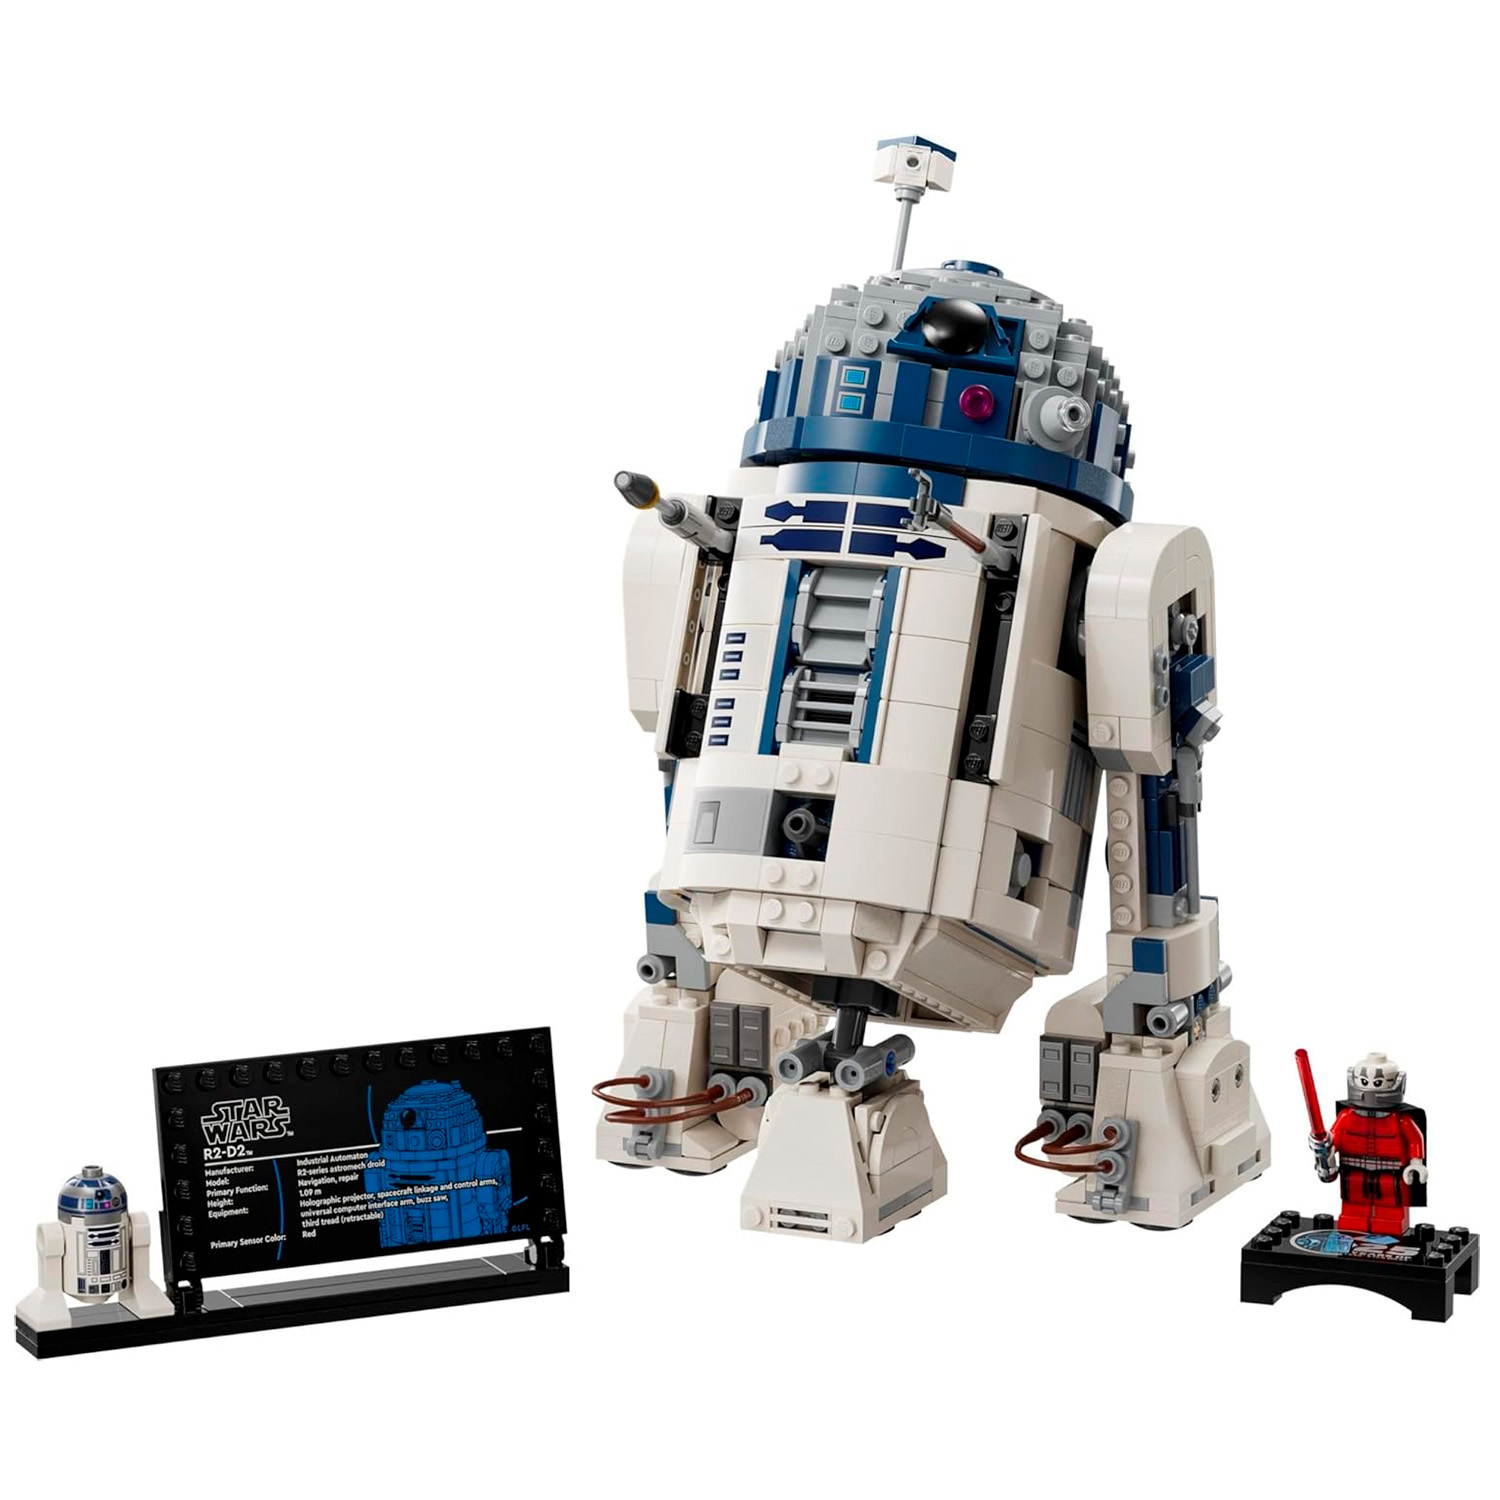 Diorama d’anniversaire 40584 | Autre | Boutique LEGO® officielle FR